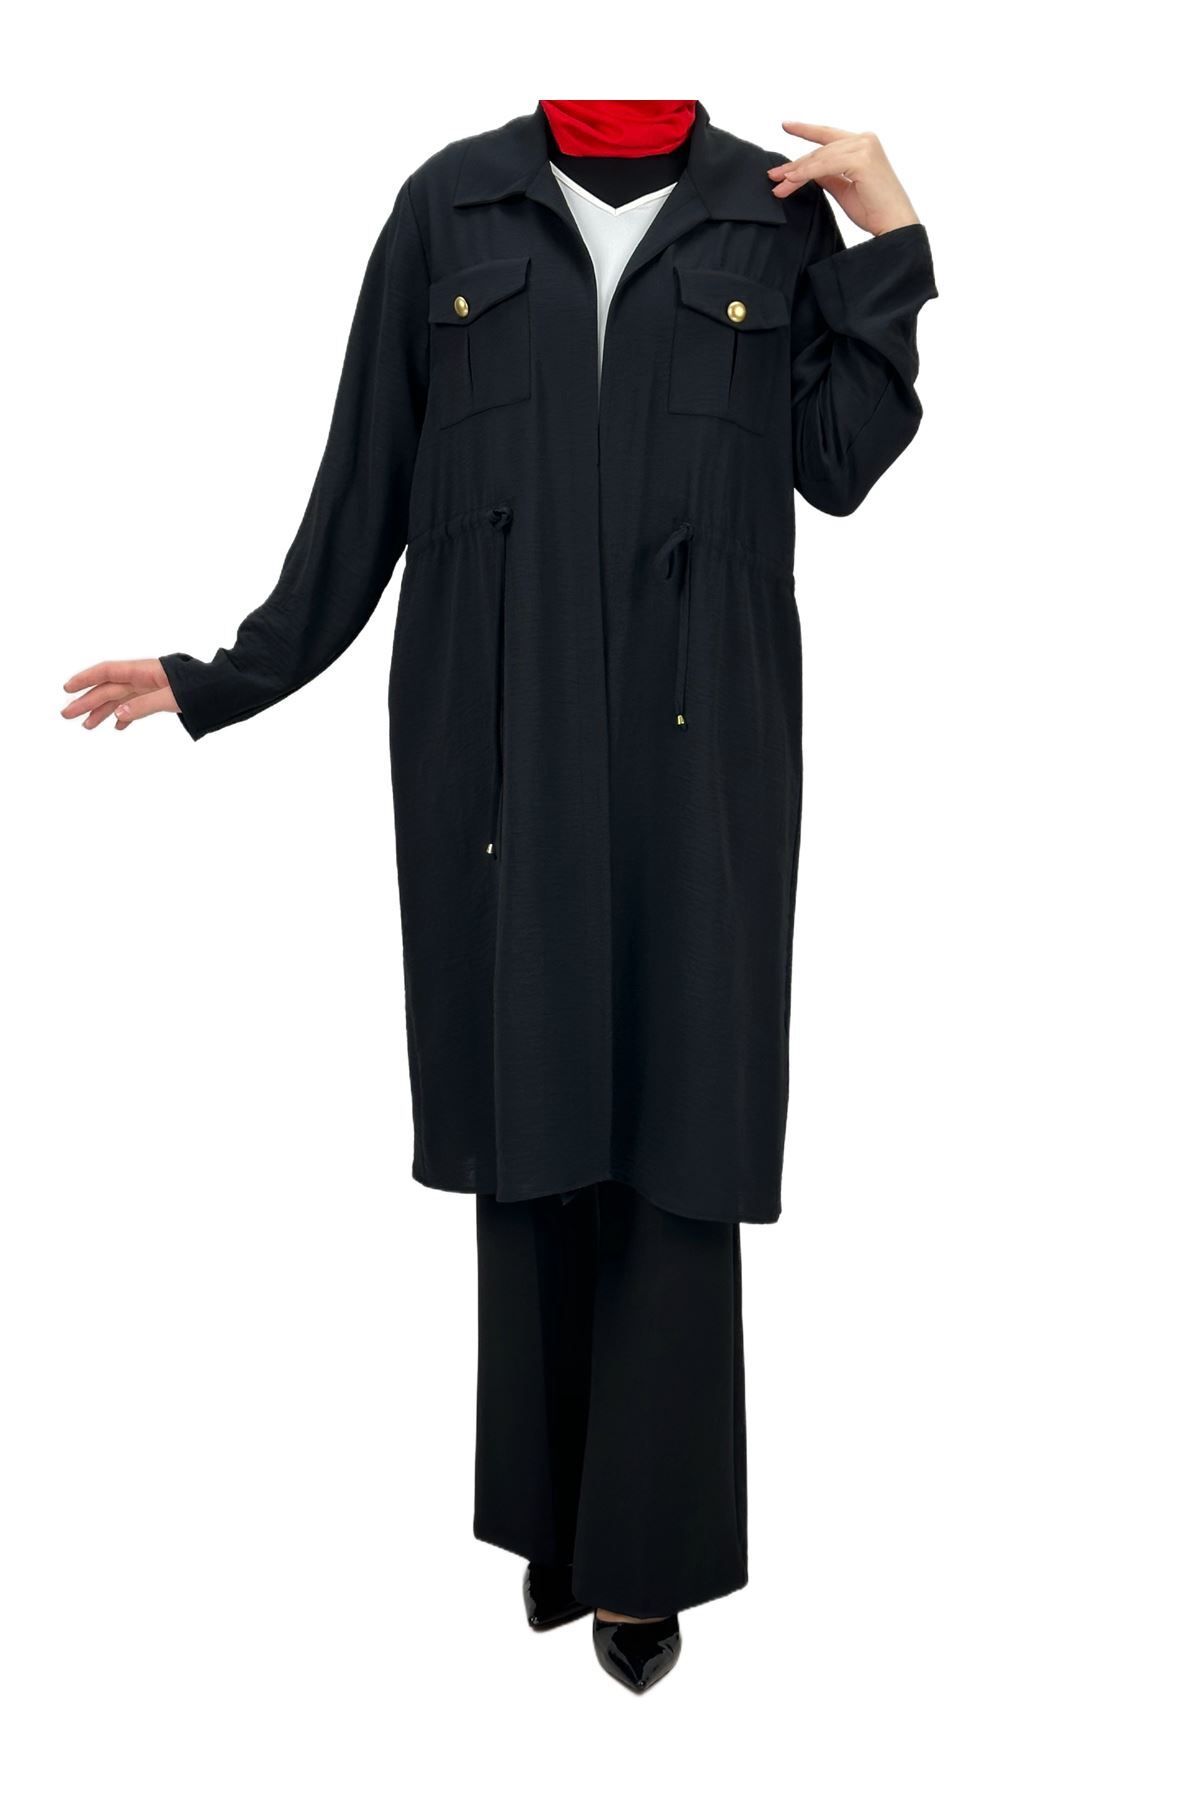 ottoman wear OTW60193  Ceket Bluz Takım Siyah